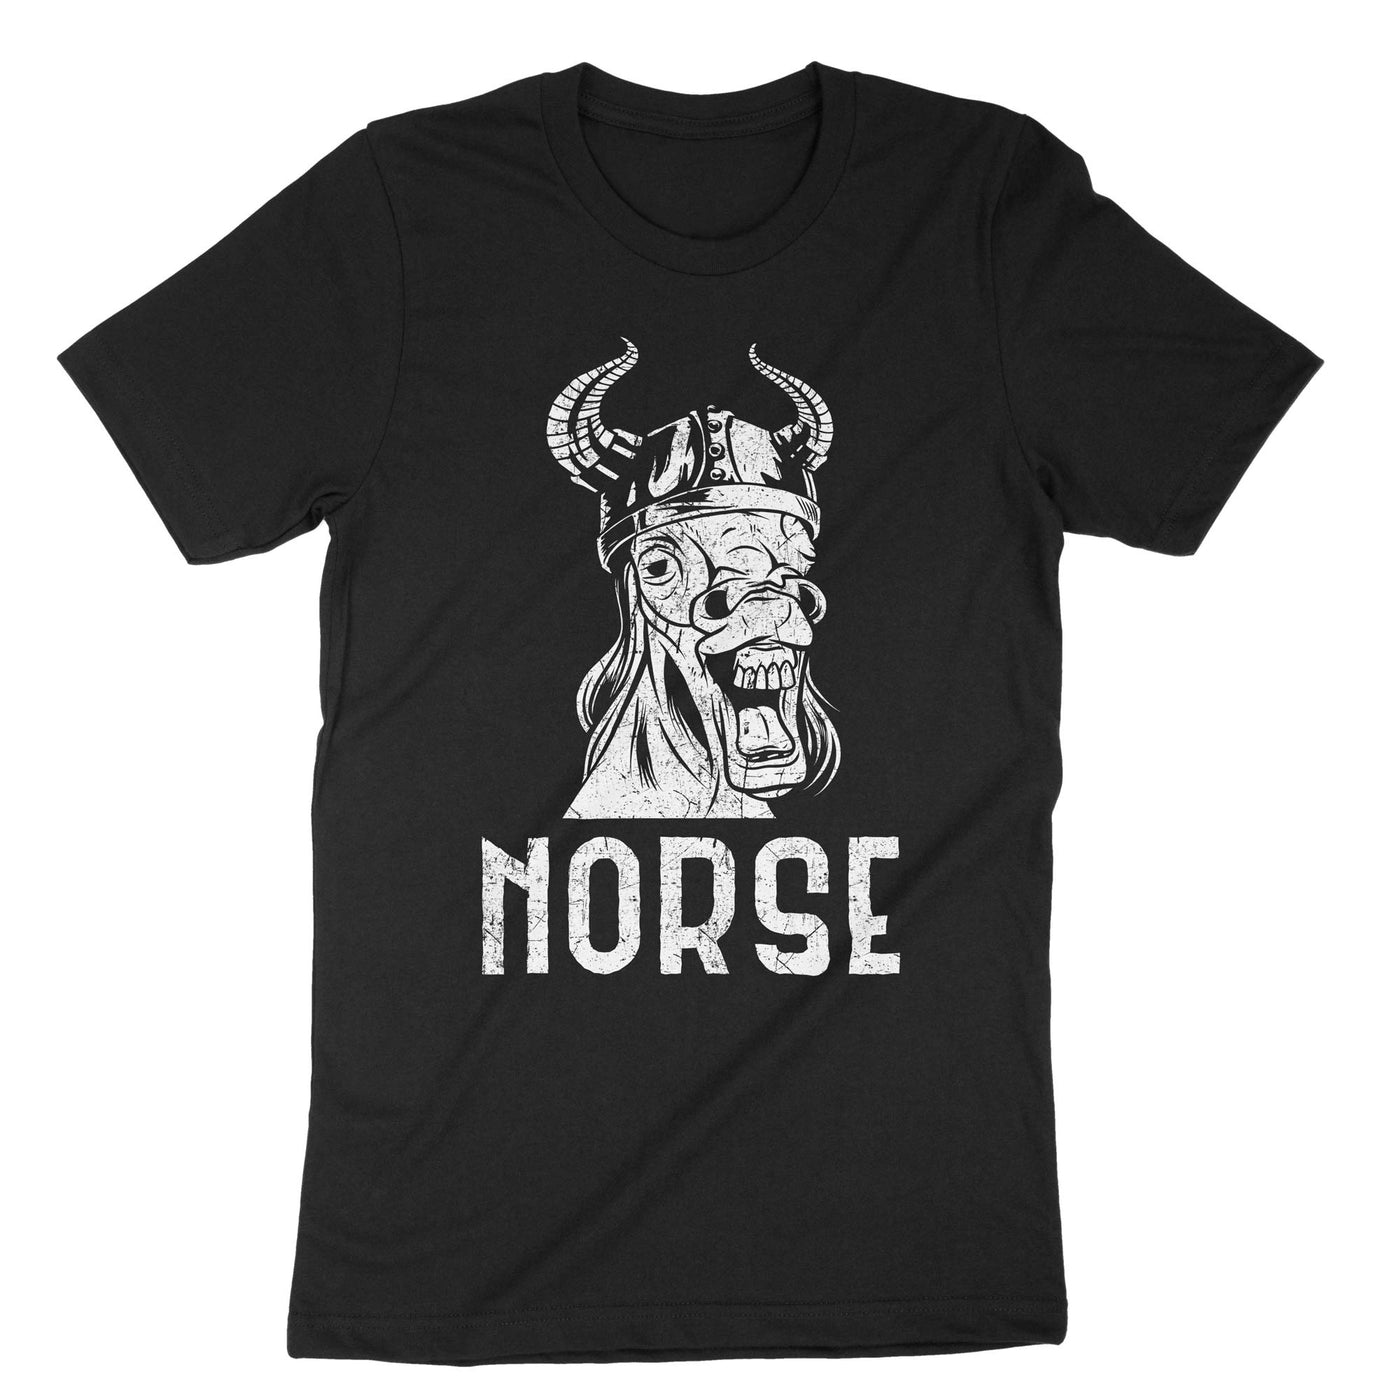 Black Norse T-Shirt#color_black